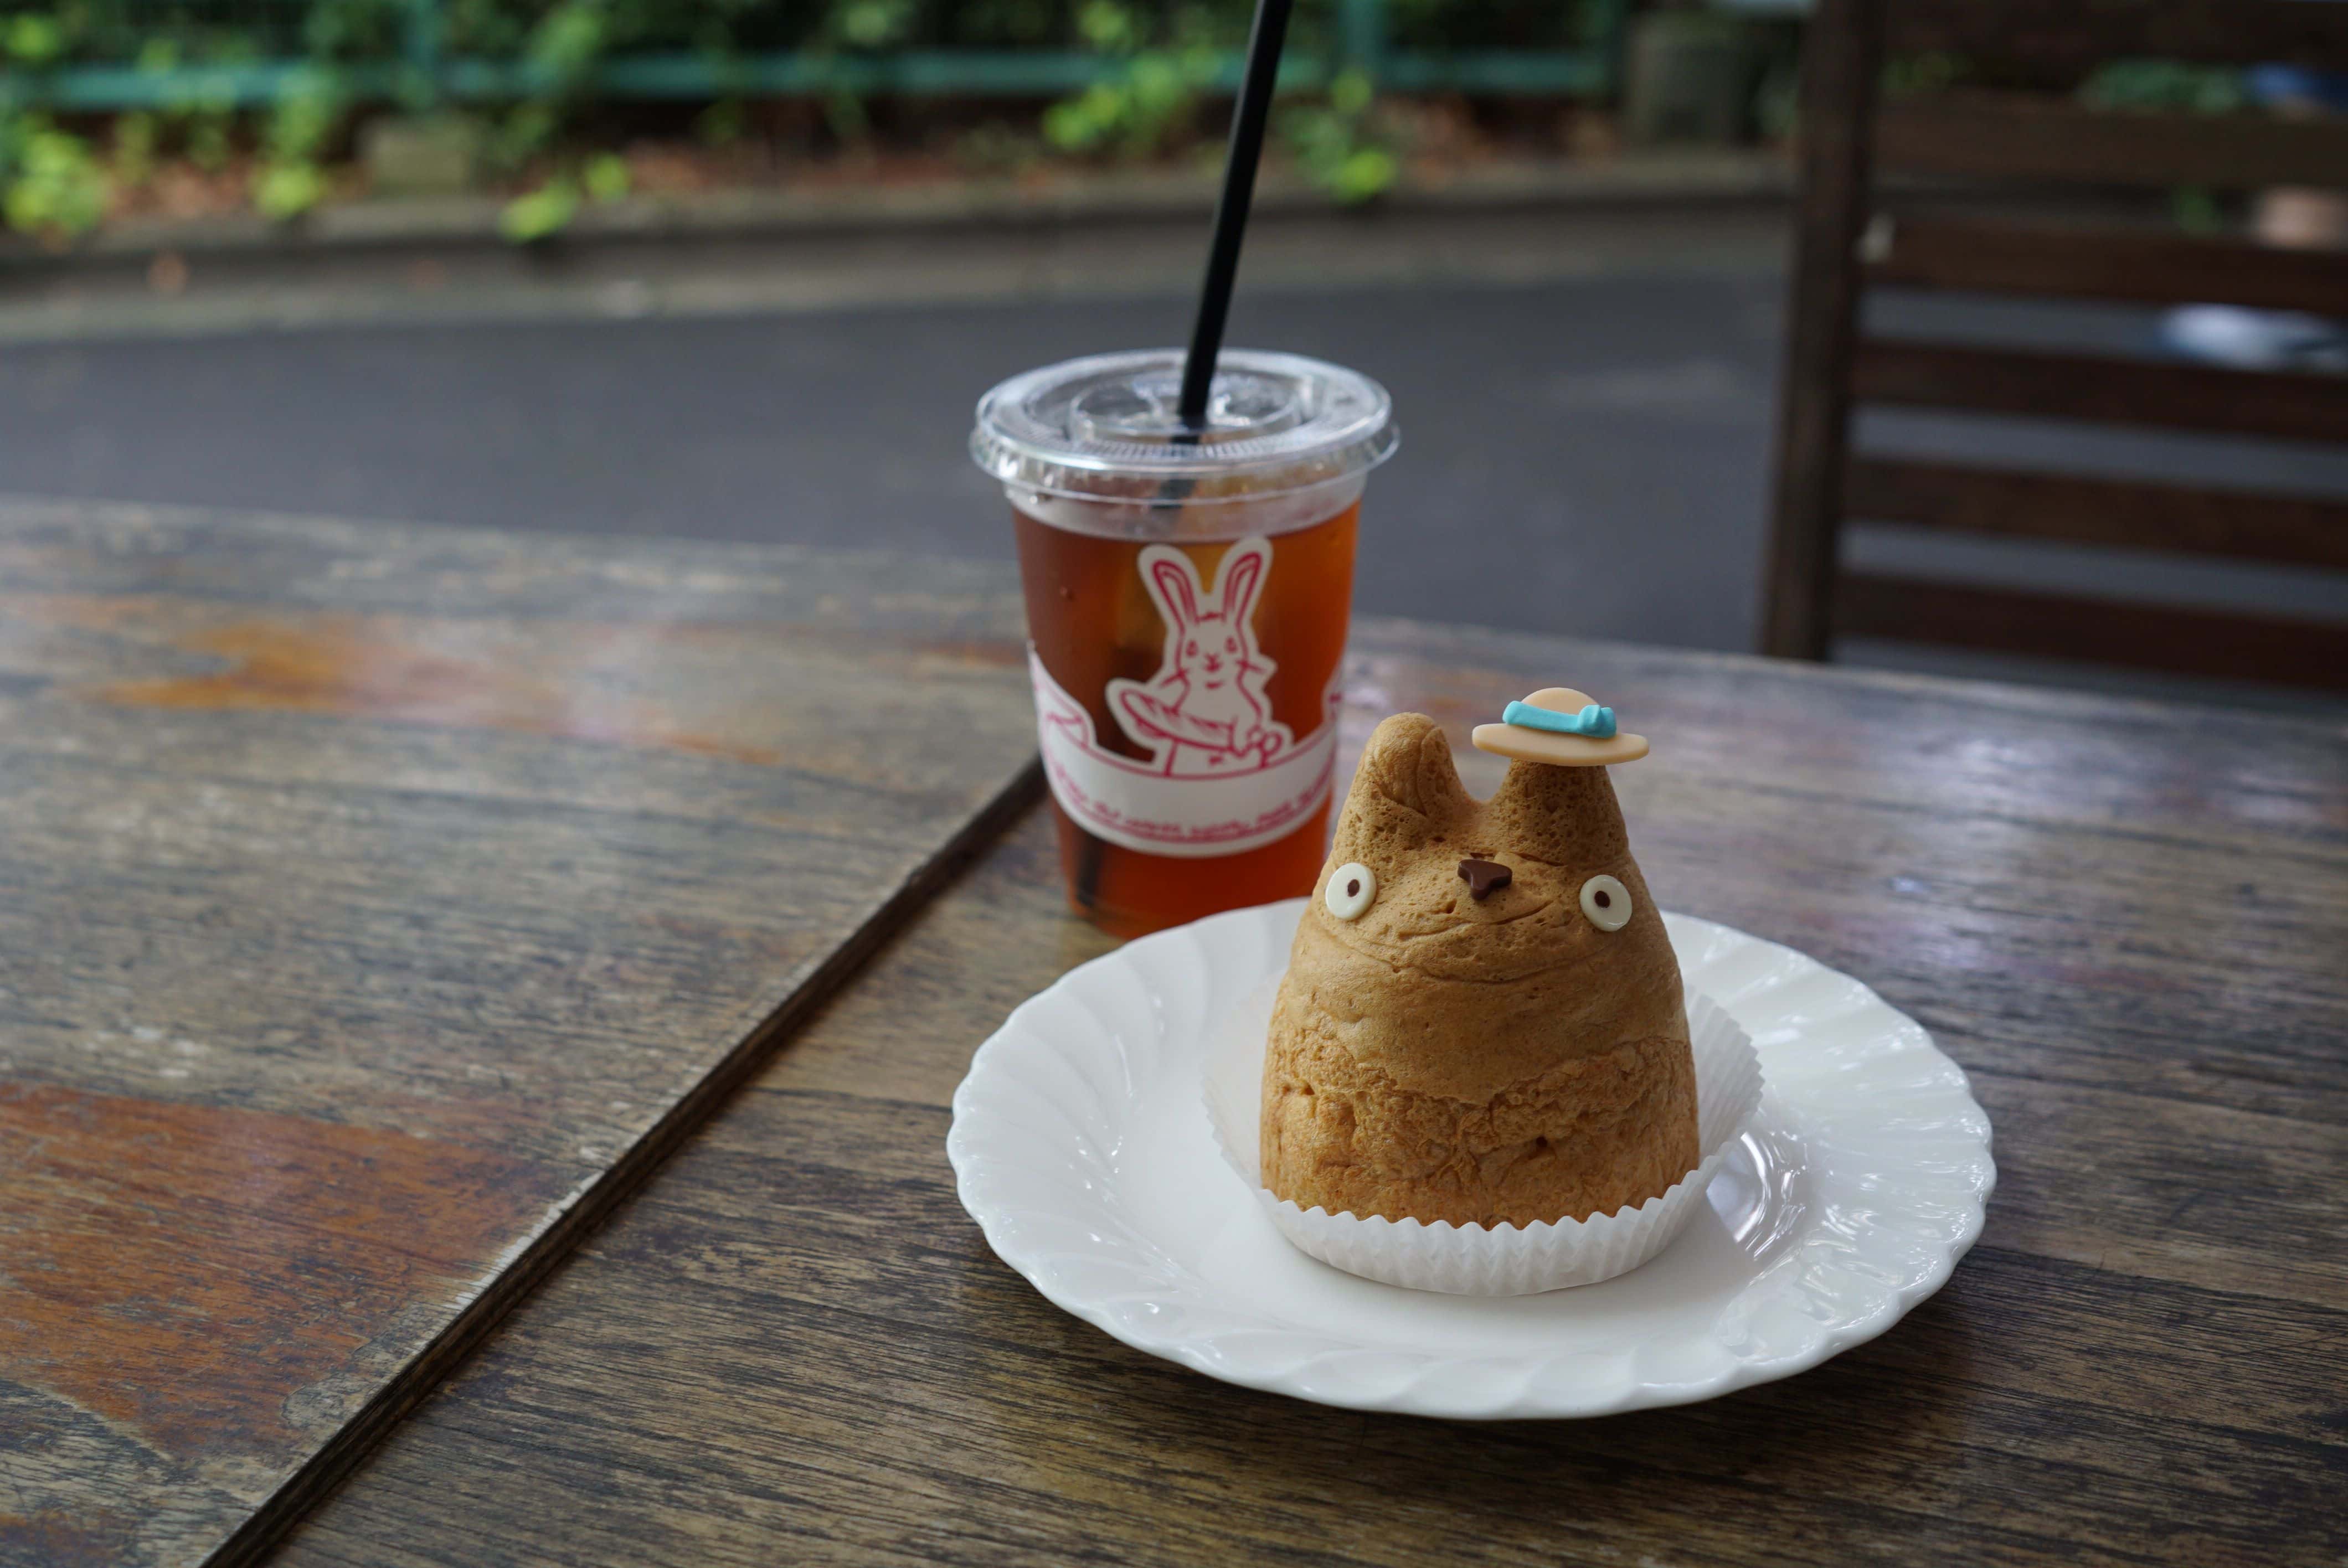 ร้าน Shirohige's Cream Puff Shop หรือที่ป้ายร้านชื่อ Tolo Coffee Bakery คาเฟ่น่ารักในโตเกียว ชูครีม totoro